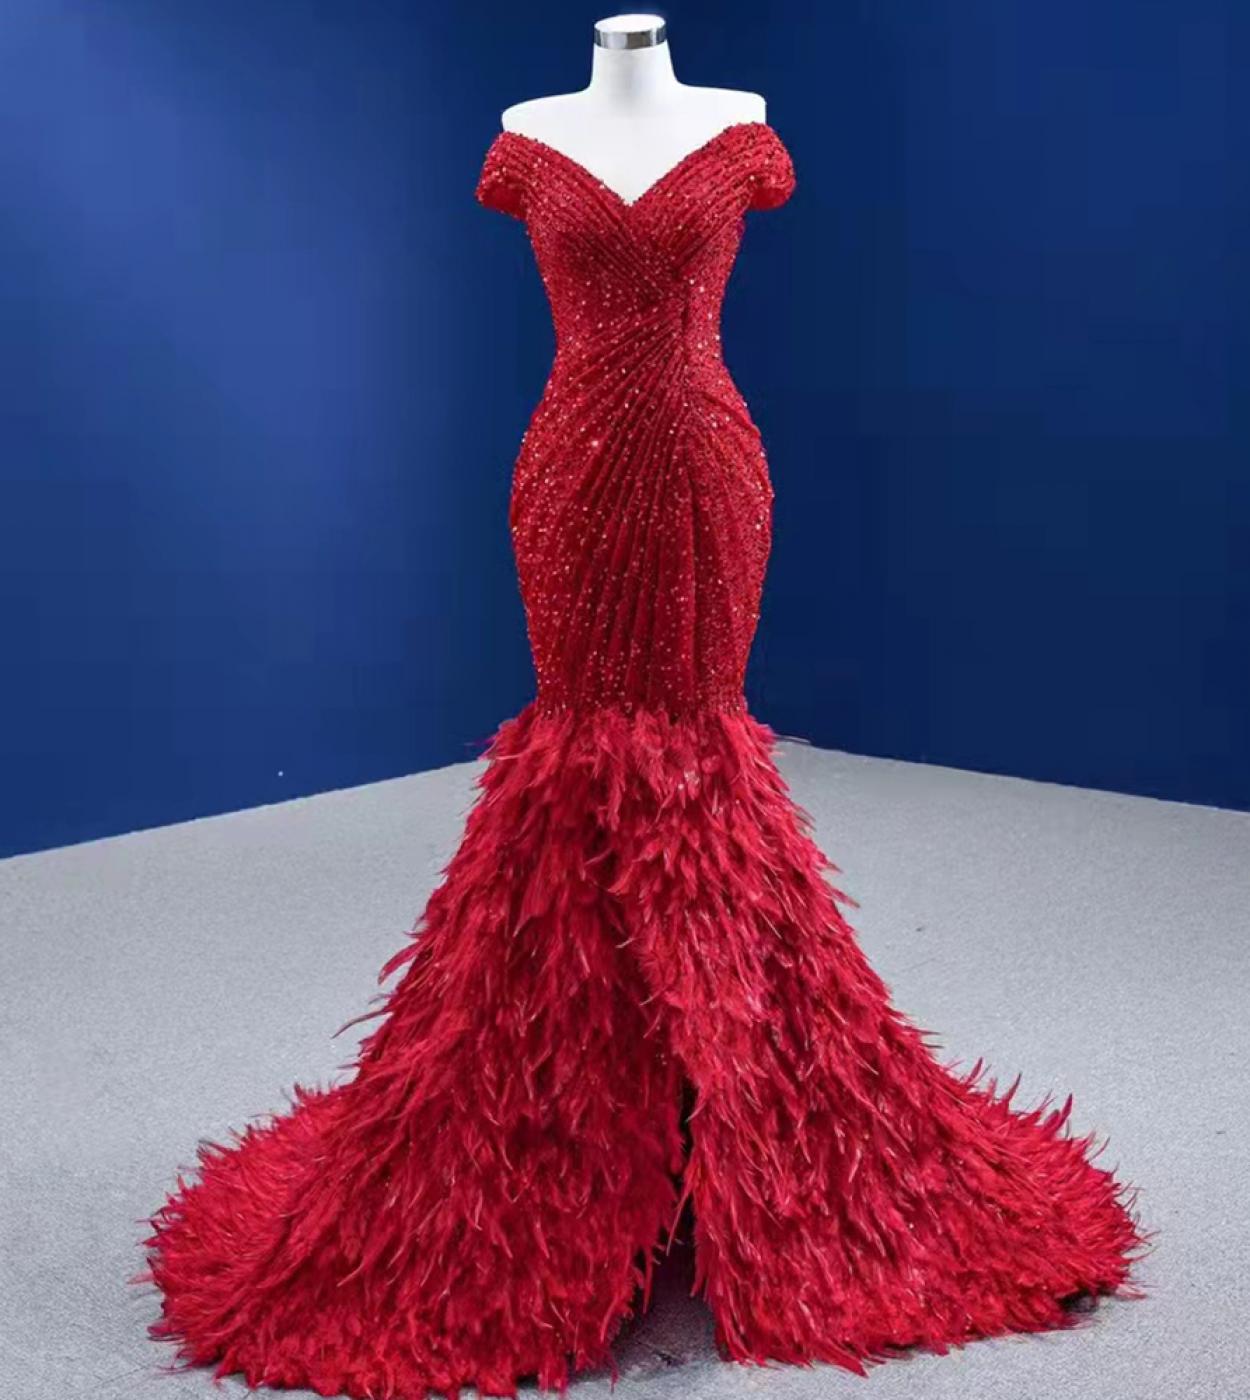 Serene Hill rouge luxe élégant robes de soirée robes 2022 Sequin plume sirène pour les femmes fête Hm67433 soirée Dresse